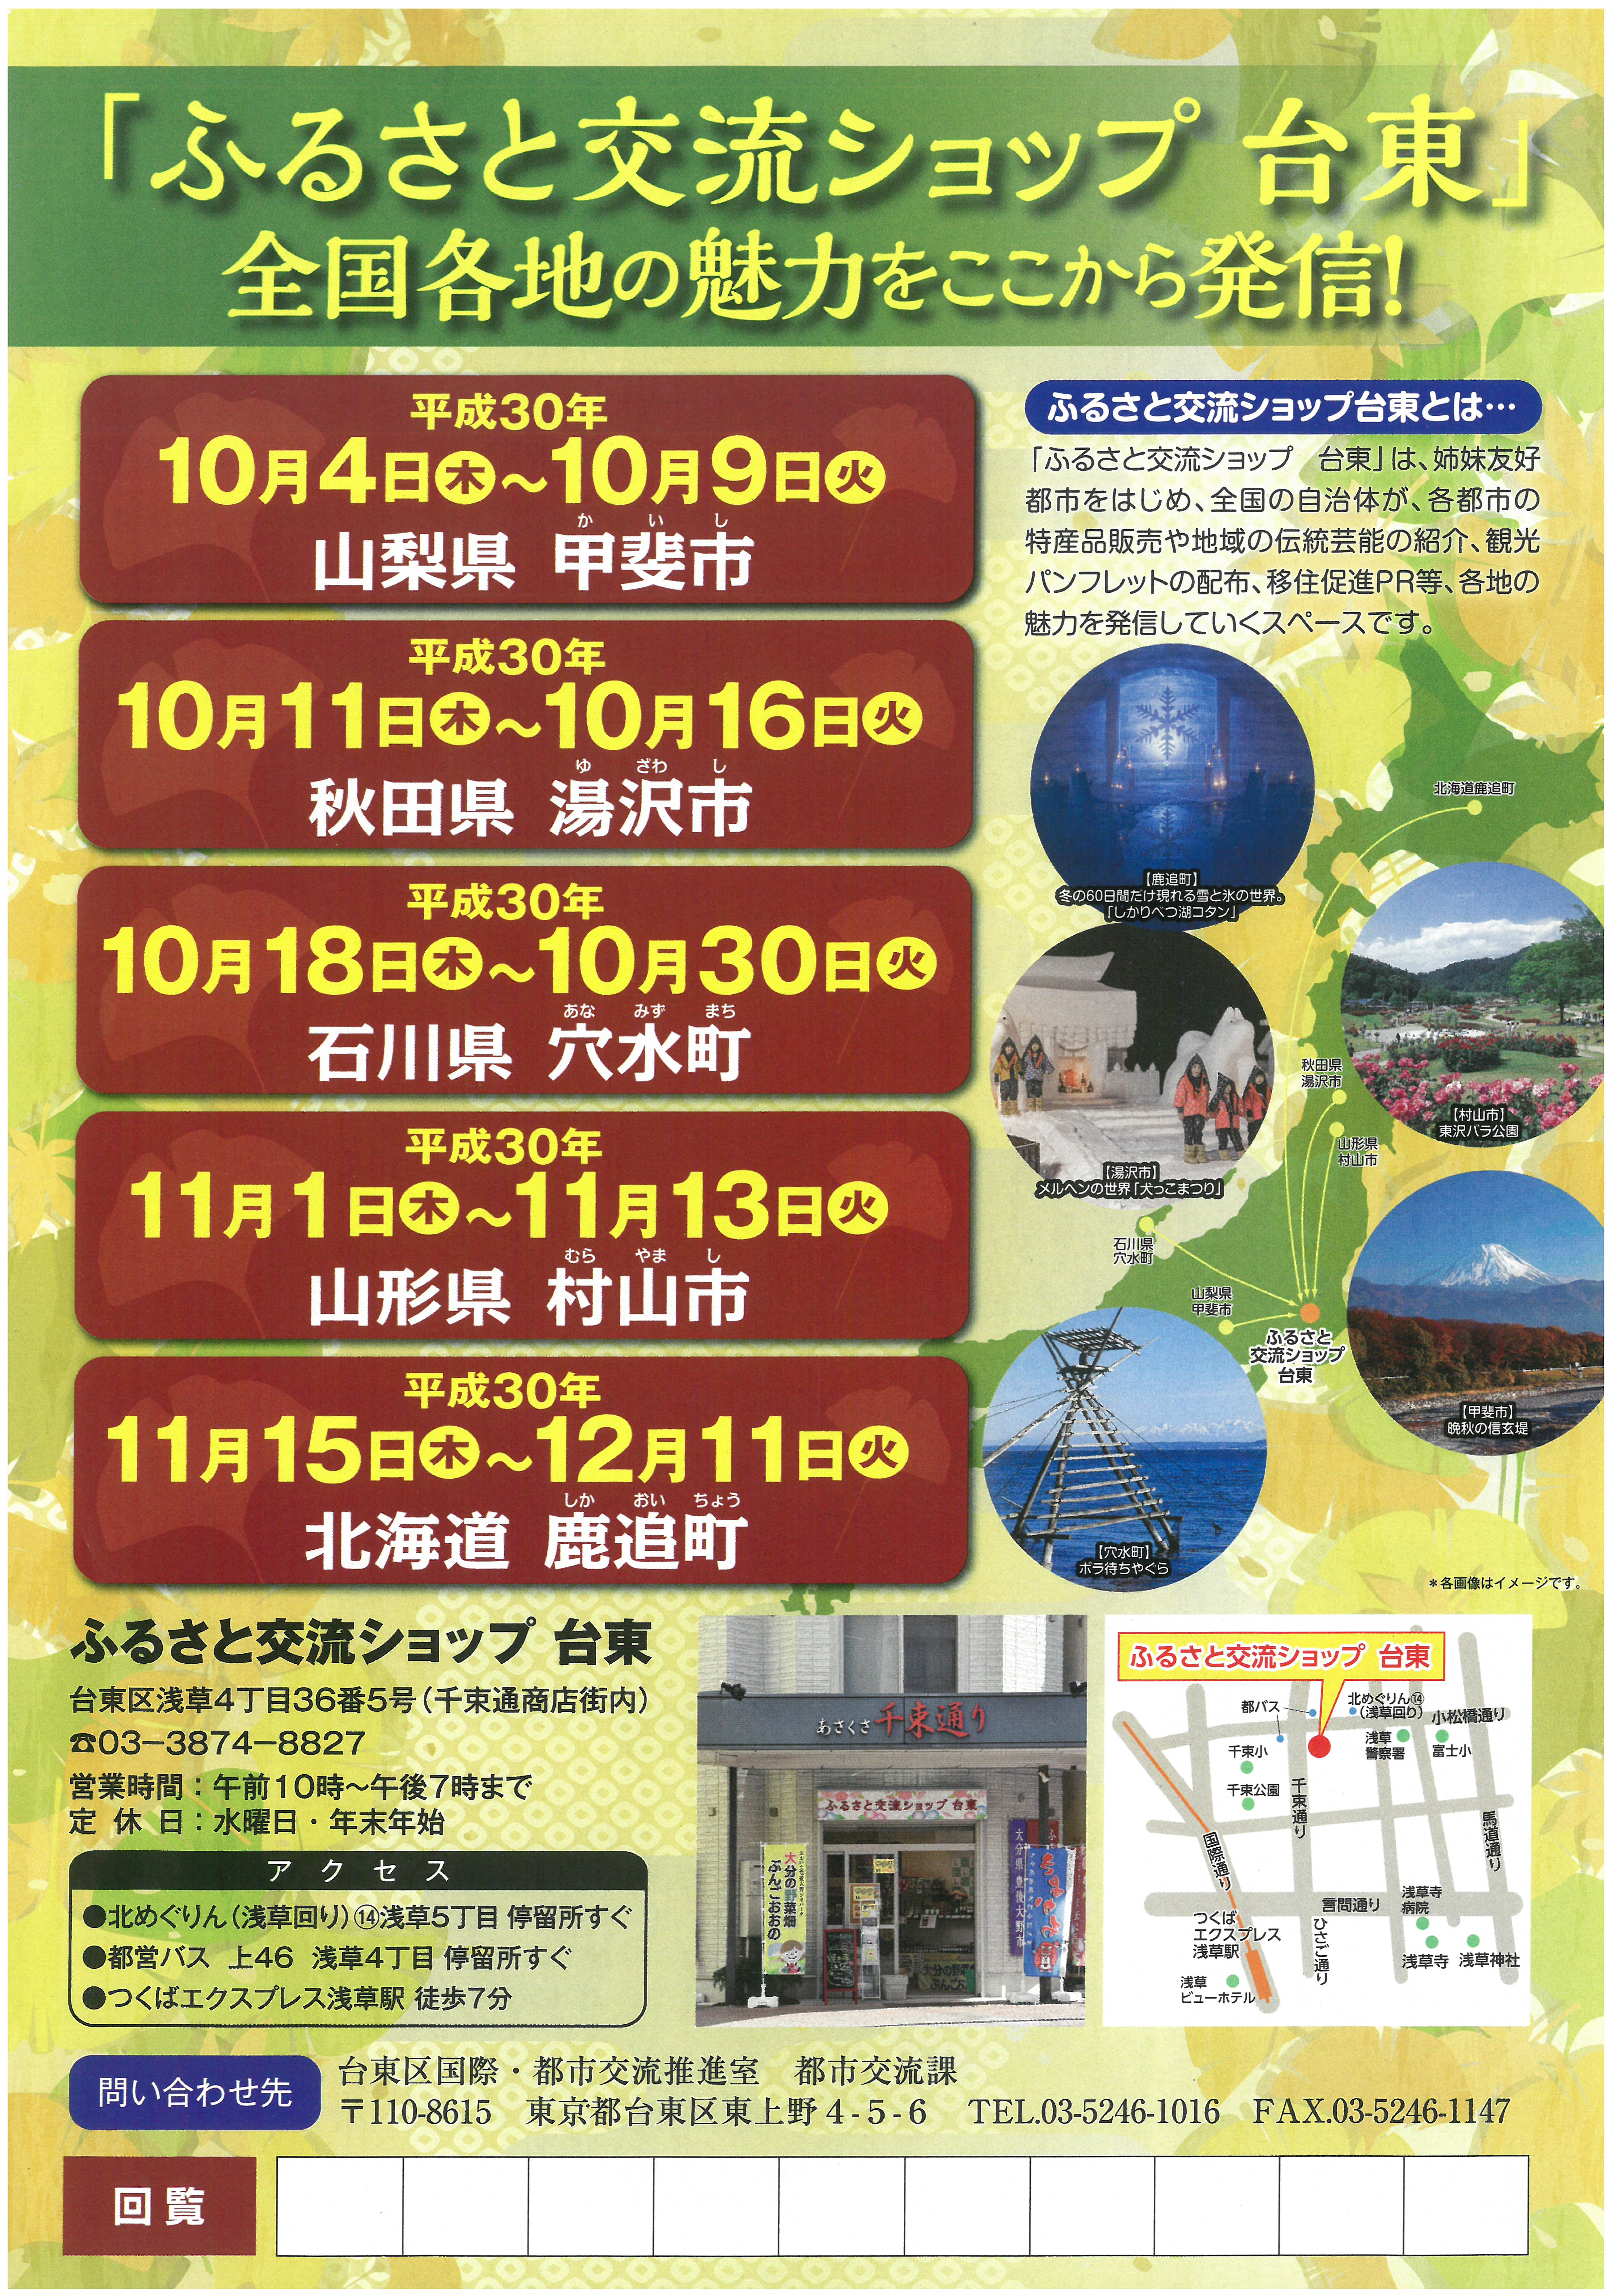 【12月11日まで】「ふるさと交流ショップ台東　北海道鹿追町」がオープンしています。